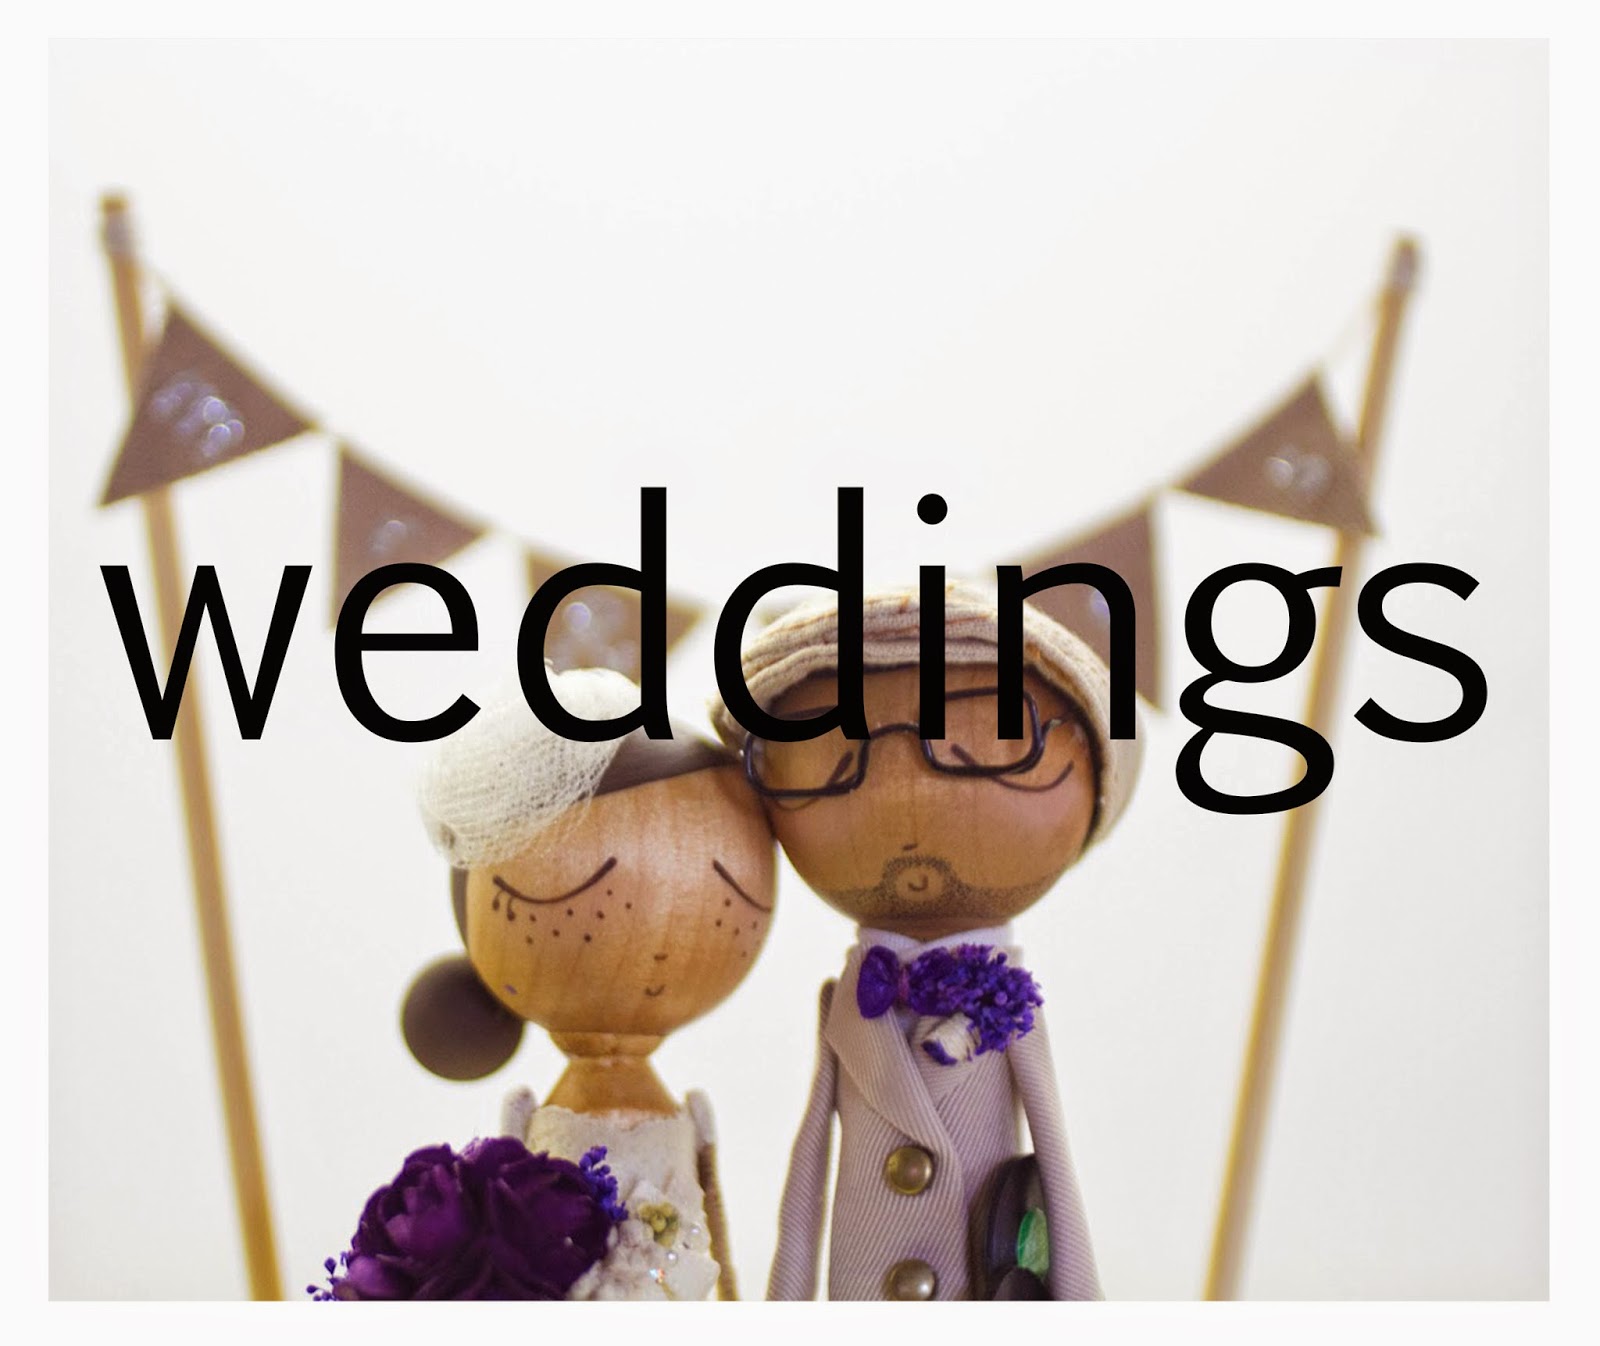  weddings